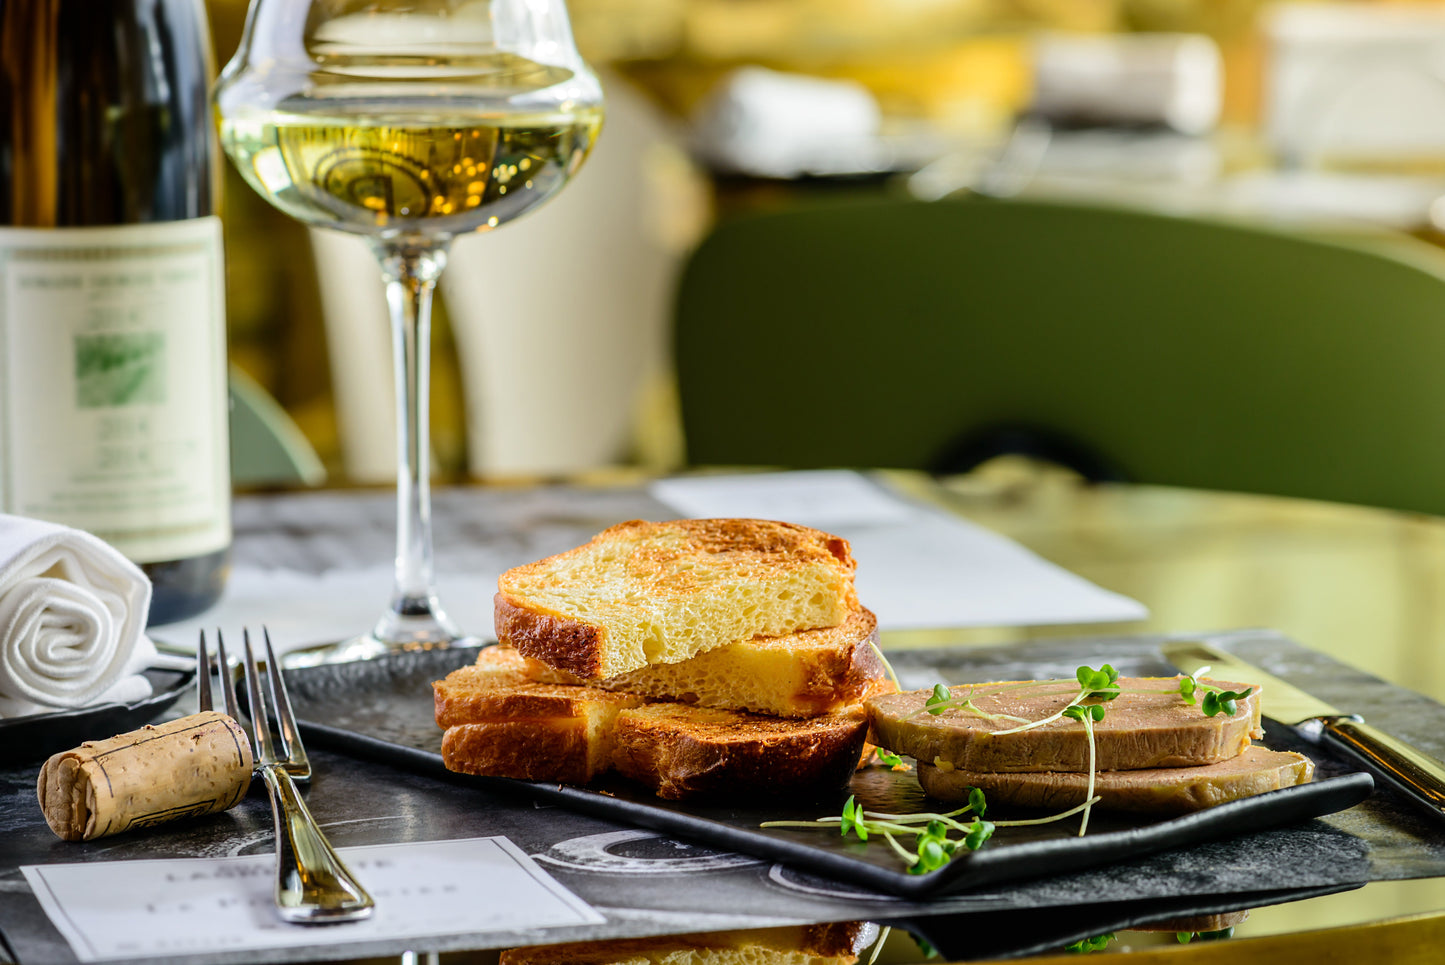 Blocco di foie gras tartufato al 3% di tartufo del Périgord. Foie gras d'anatra IGP Francia Sud-Ouest. 200 g